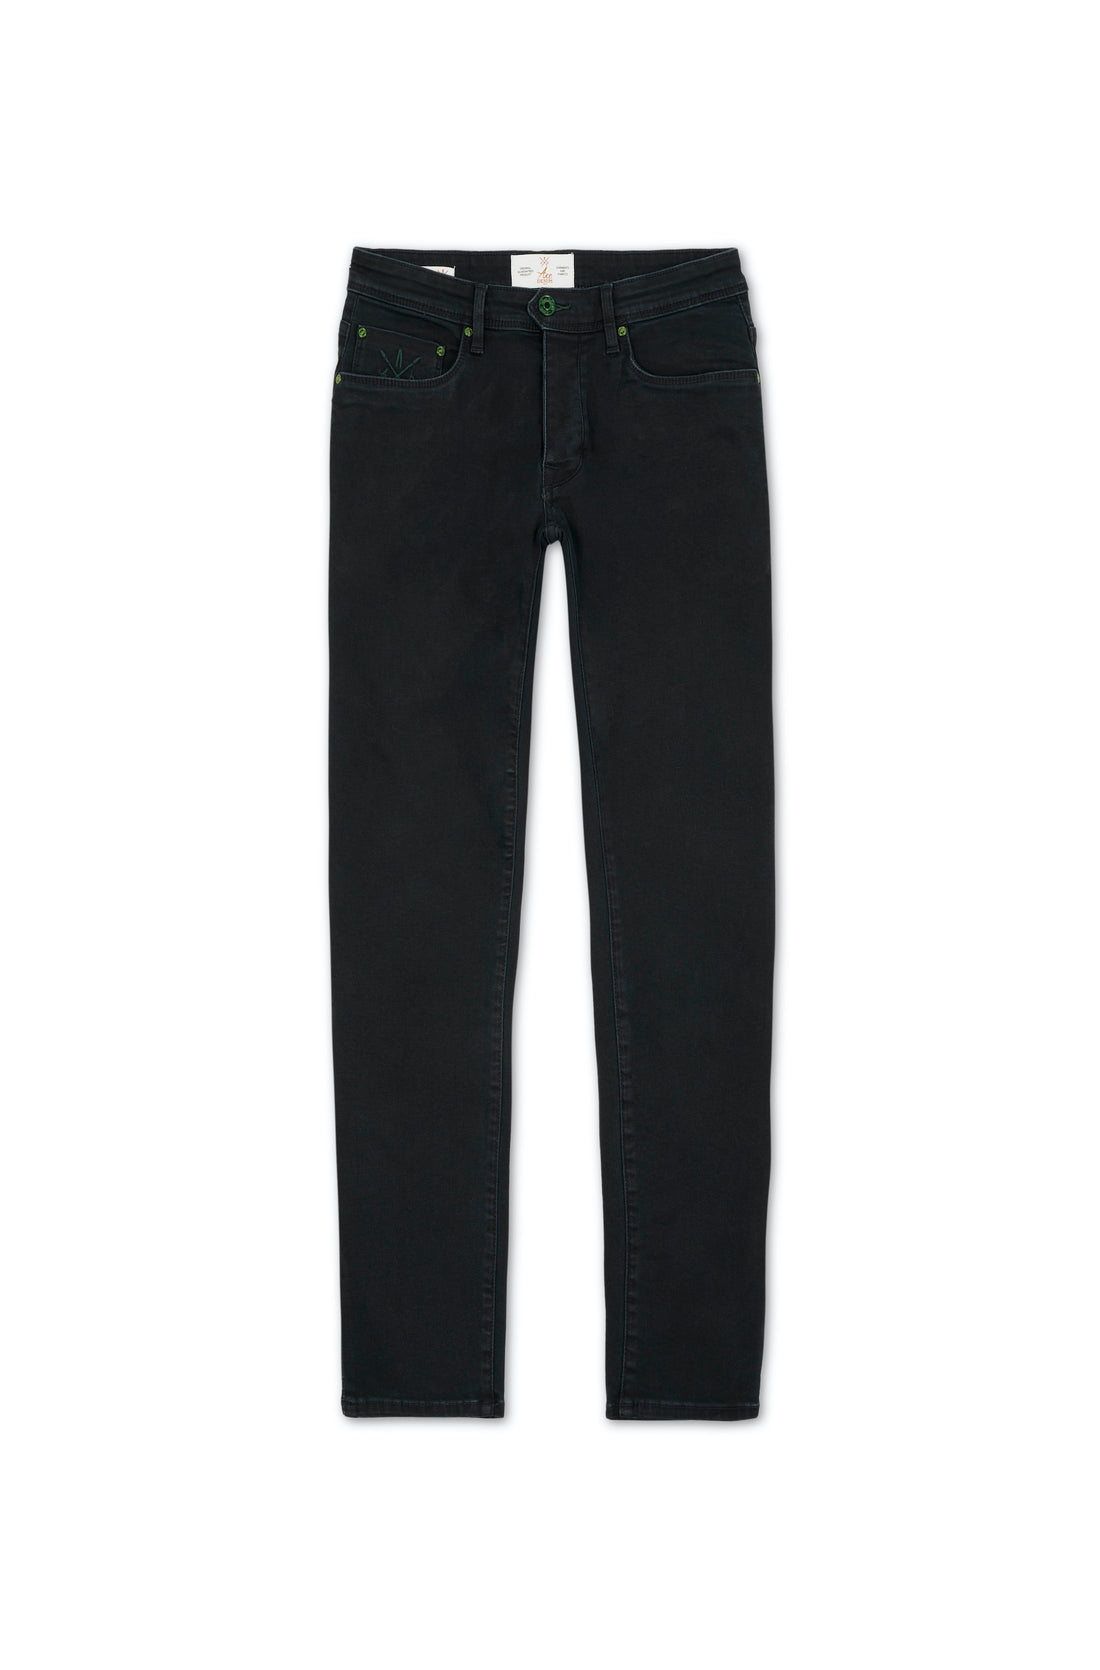 jeans homme bleu nuit slim stretch details vert